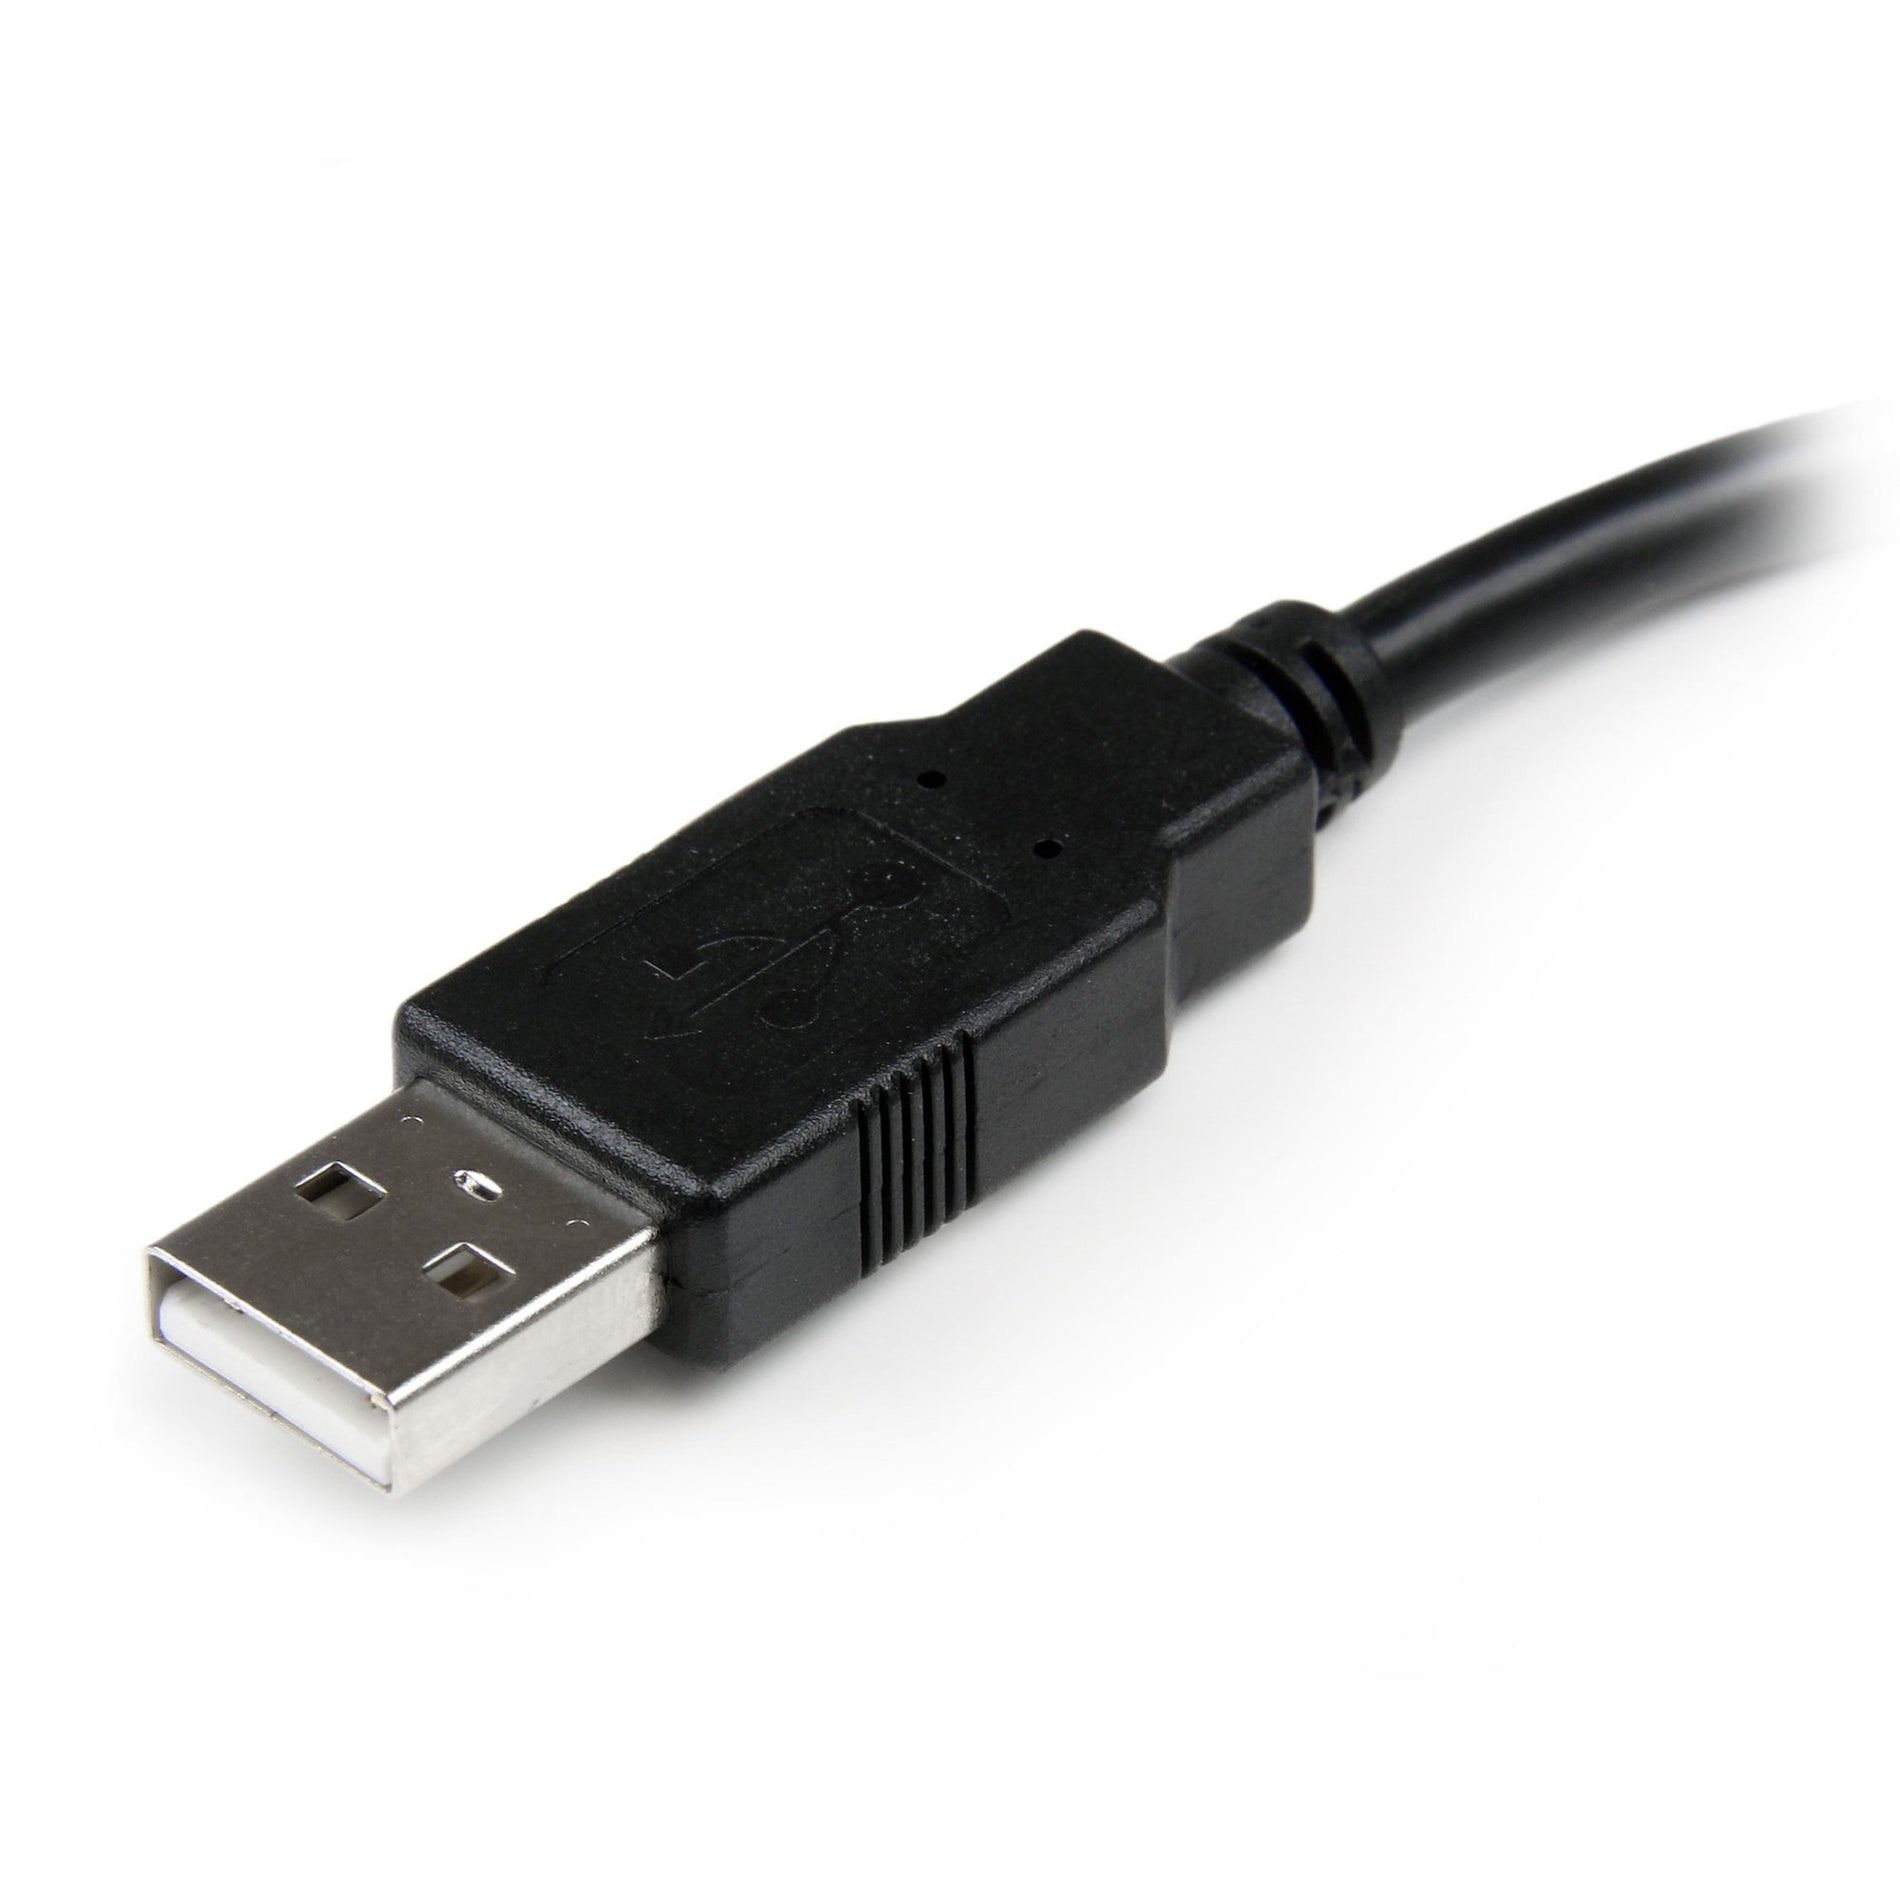 スタートレック・ドットコム USBEXTAA6IN 6in USB 2.0 エクステンションアダプターケーブル A to A - M/F、データ転送ケーブル